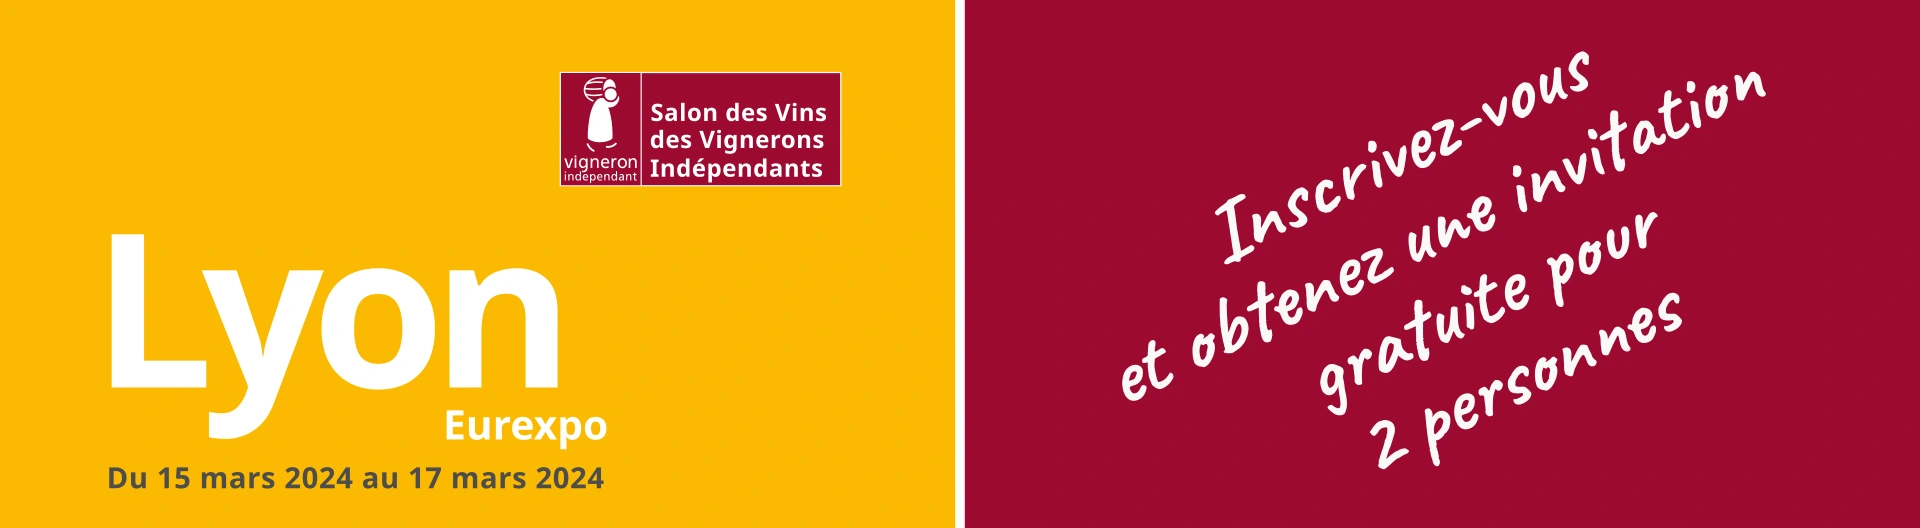 18ème Salon des Vins des Vignerons Indépendants à Lyon. 15-17 mars 2024 - Eurexpo | Girls Take Lyon